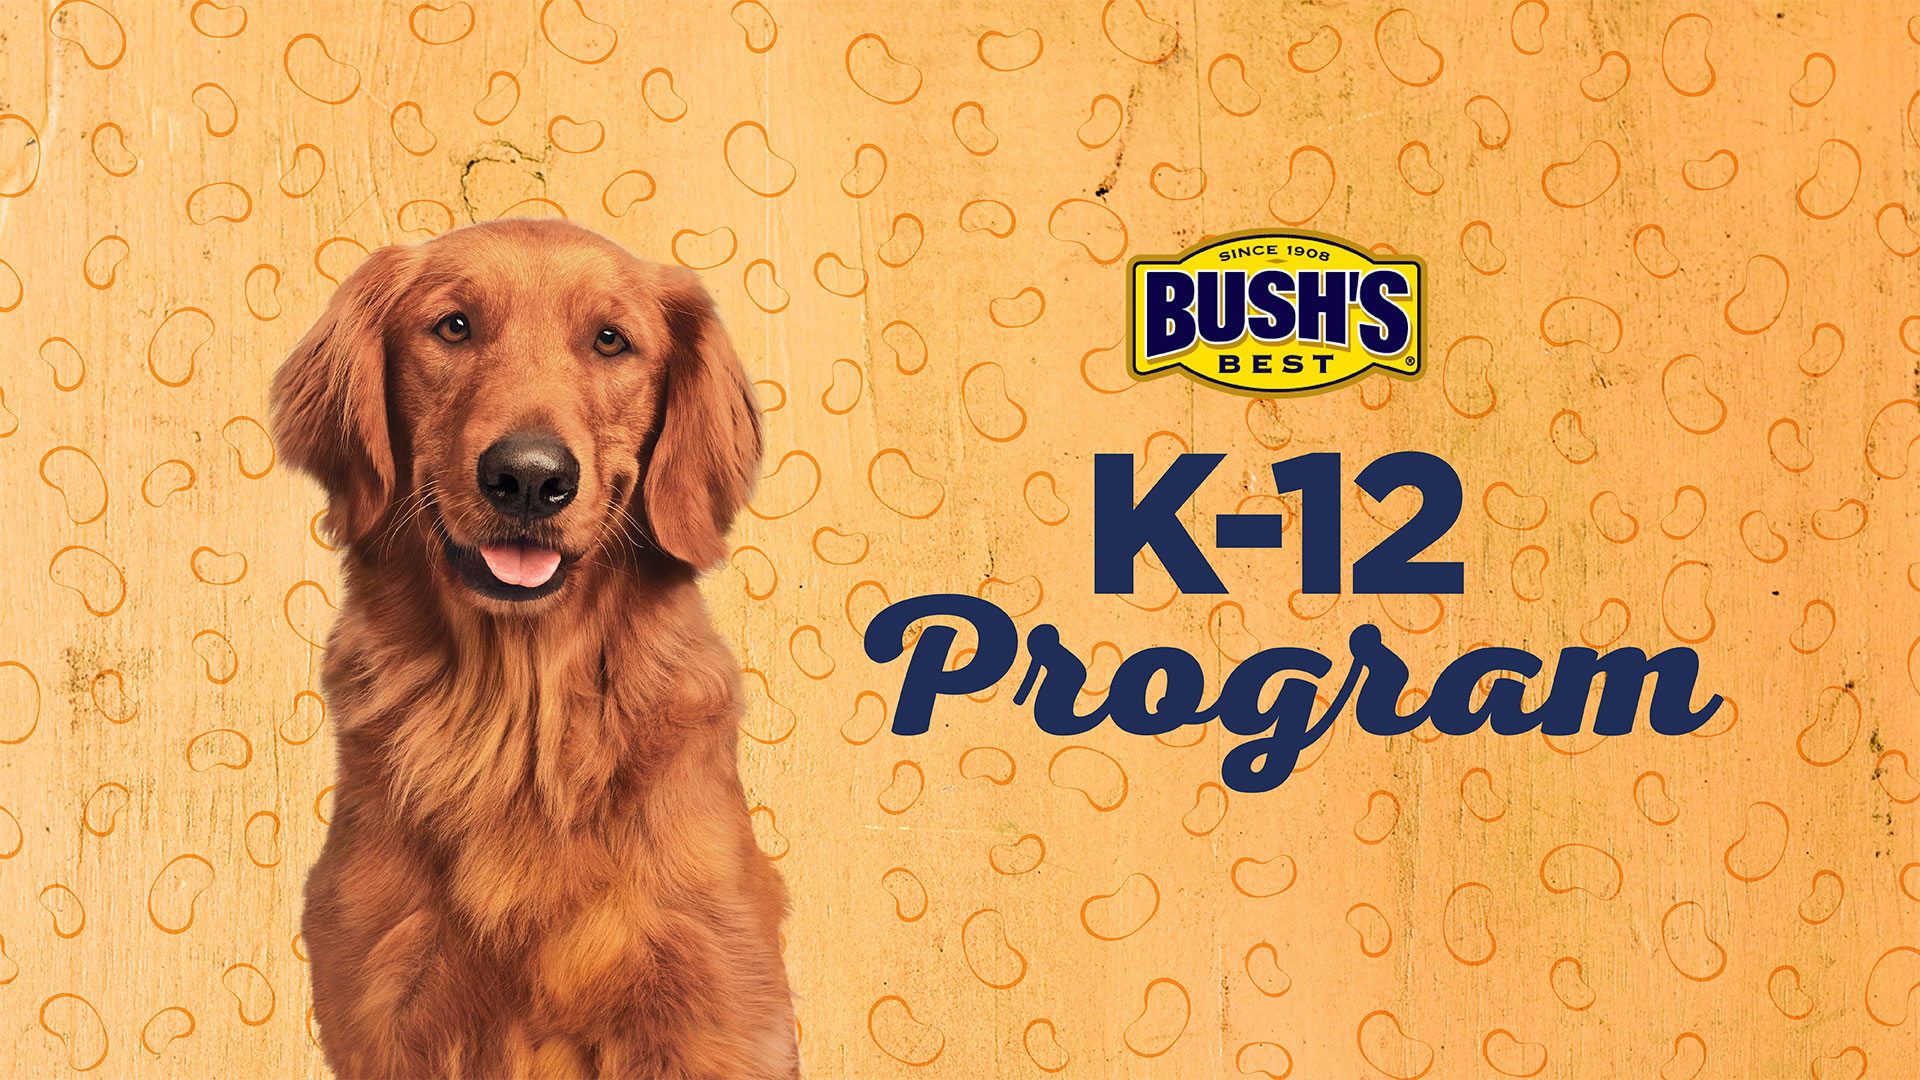 Bush’s K-12 Program